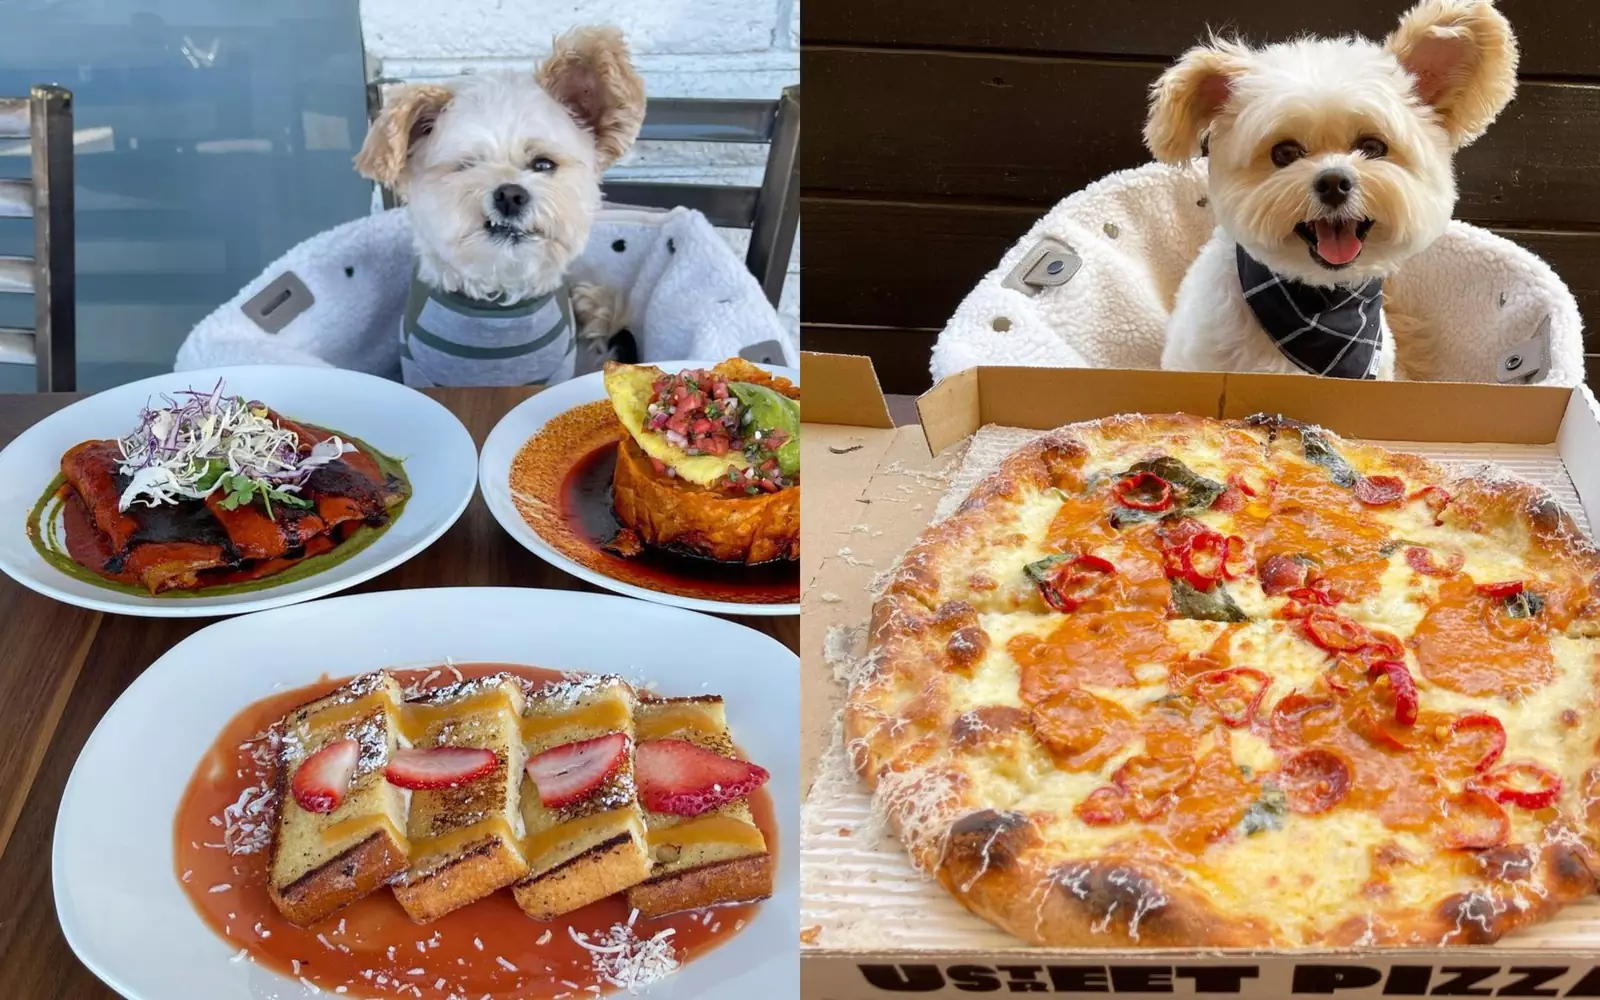 Теперь симпатичный маленький собакен постоянно посещает вместе с хозяевами различные кафе и рестораны и фотографируется рядом с едой.